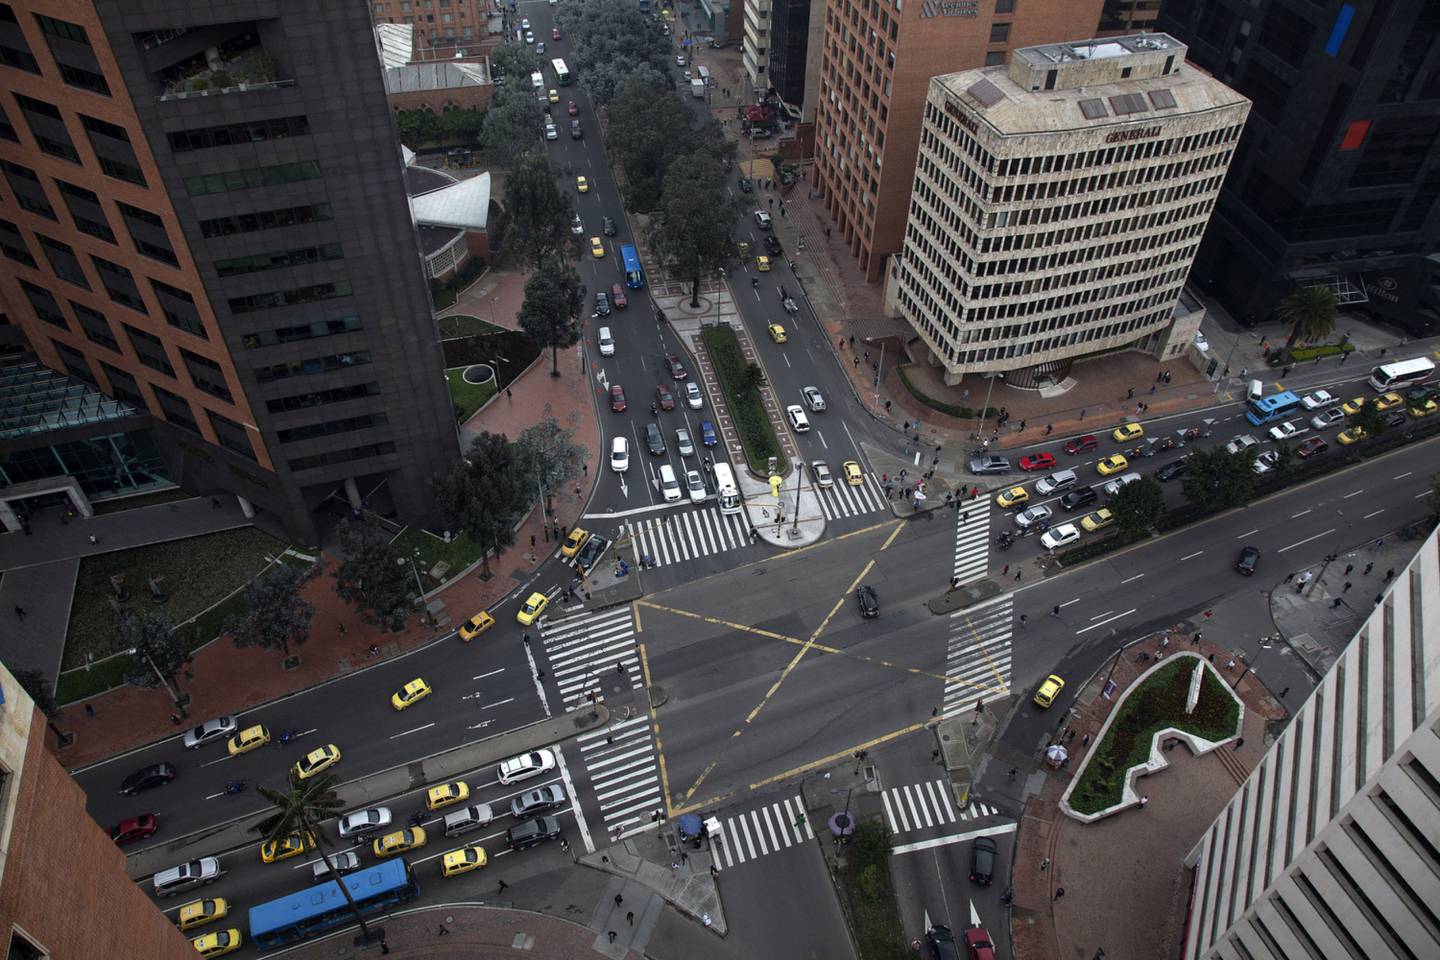 Vehículos pasan por una intersección en el distrito financiero de Bogotá, Colombia, el viernes 22 de marzo de 2013.dfd